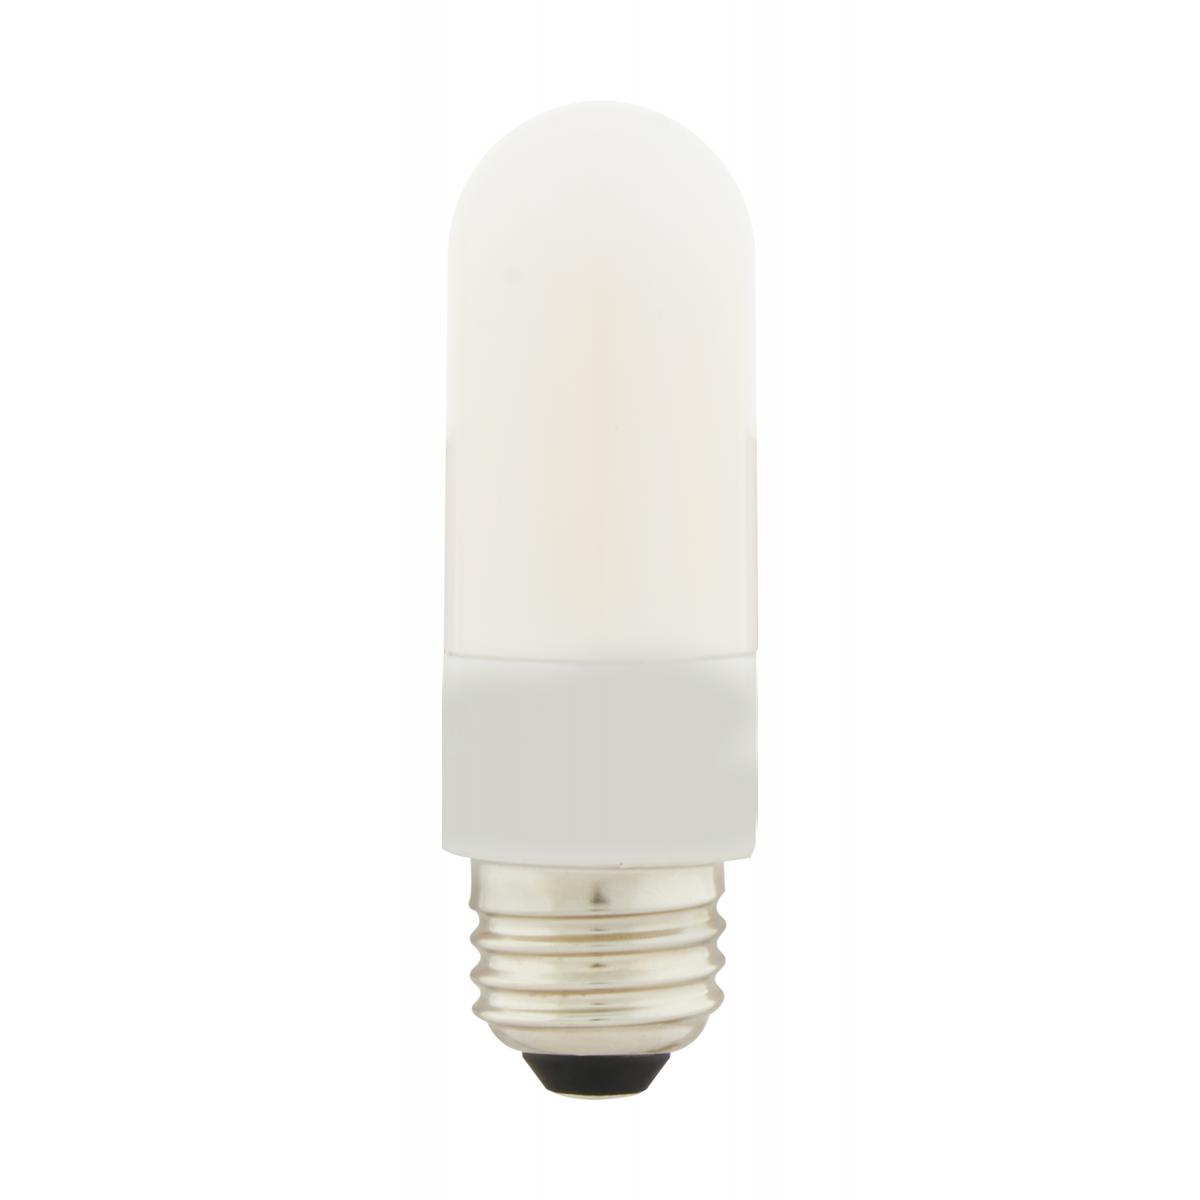 Casaya DEL Filament Rétro ampoules bougie 4,5 W = 40 W e14 clair blanc chaud Ra > 90 